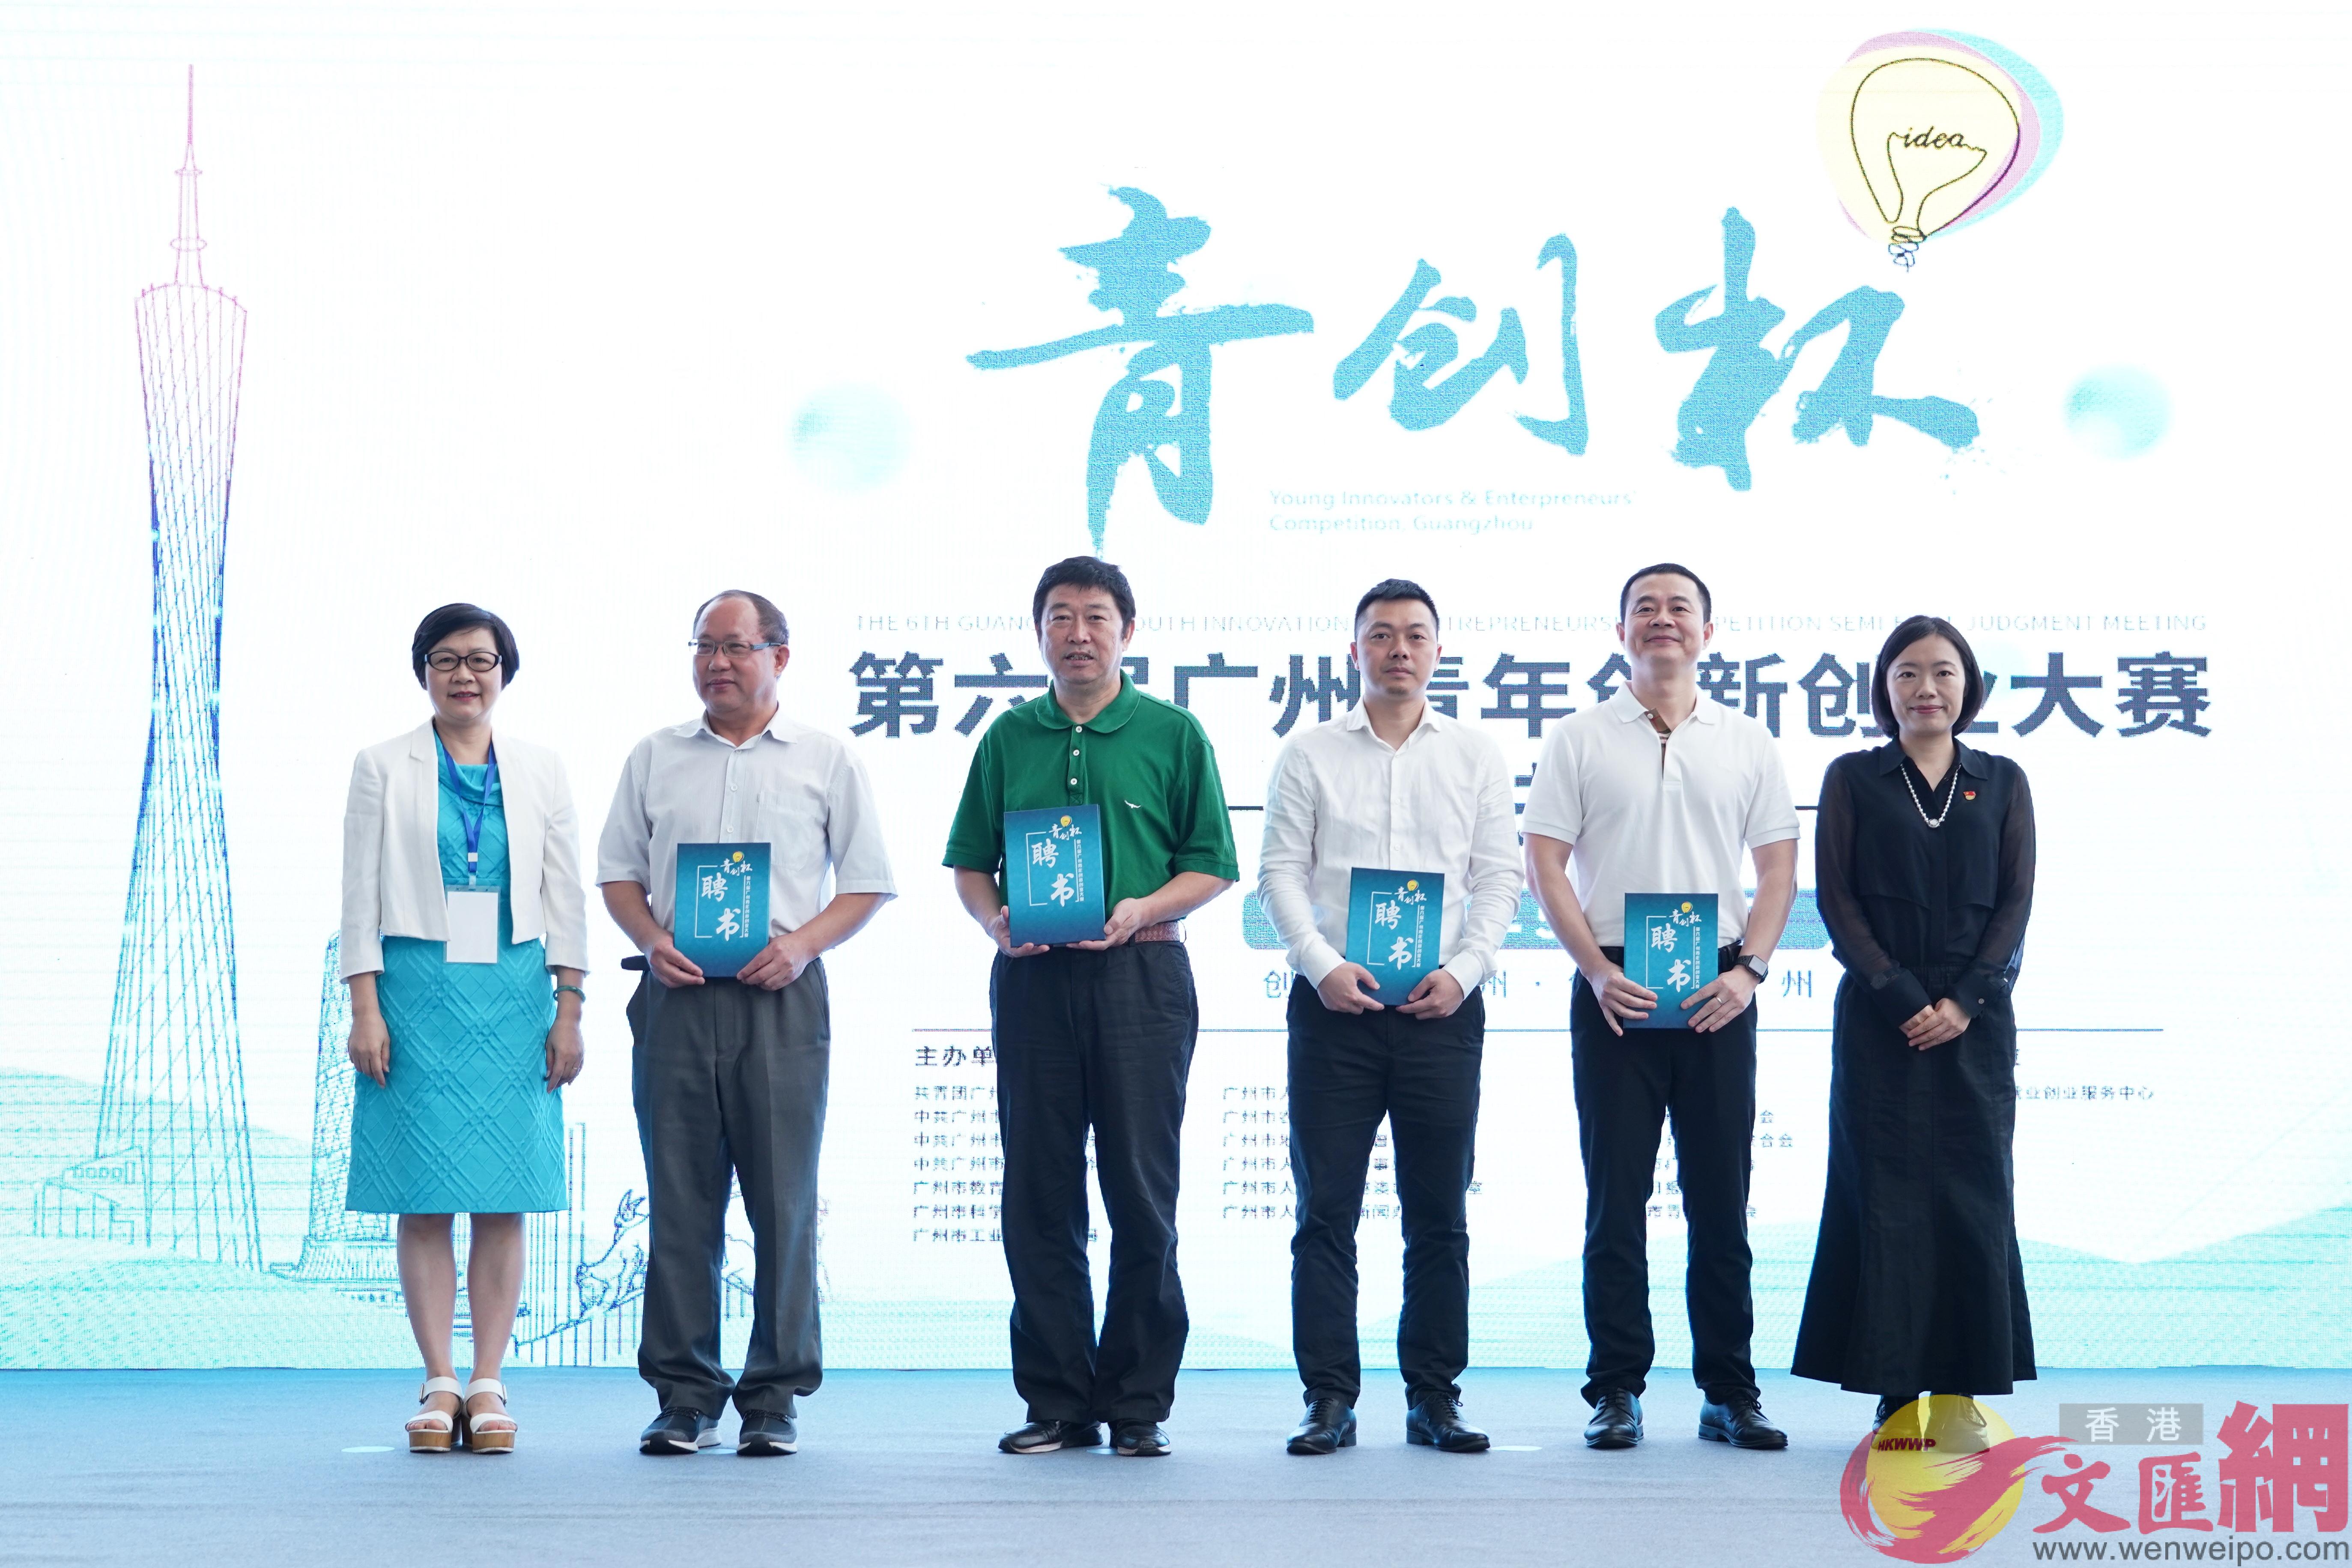 u青創杯v第六屆廣州青年創新創業大賽總決賽28日在廣州舉行C]記者 盧靜怡攝^